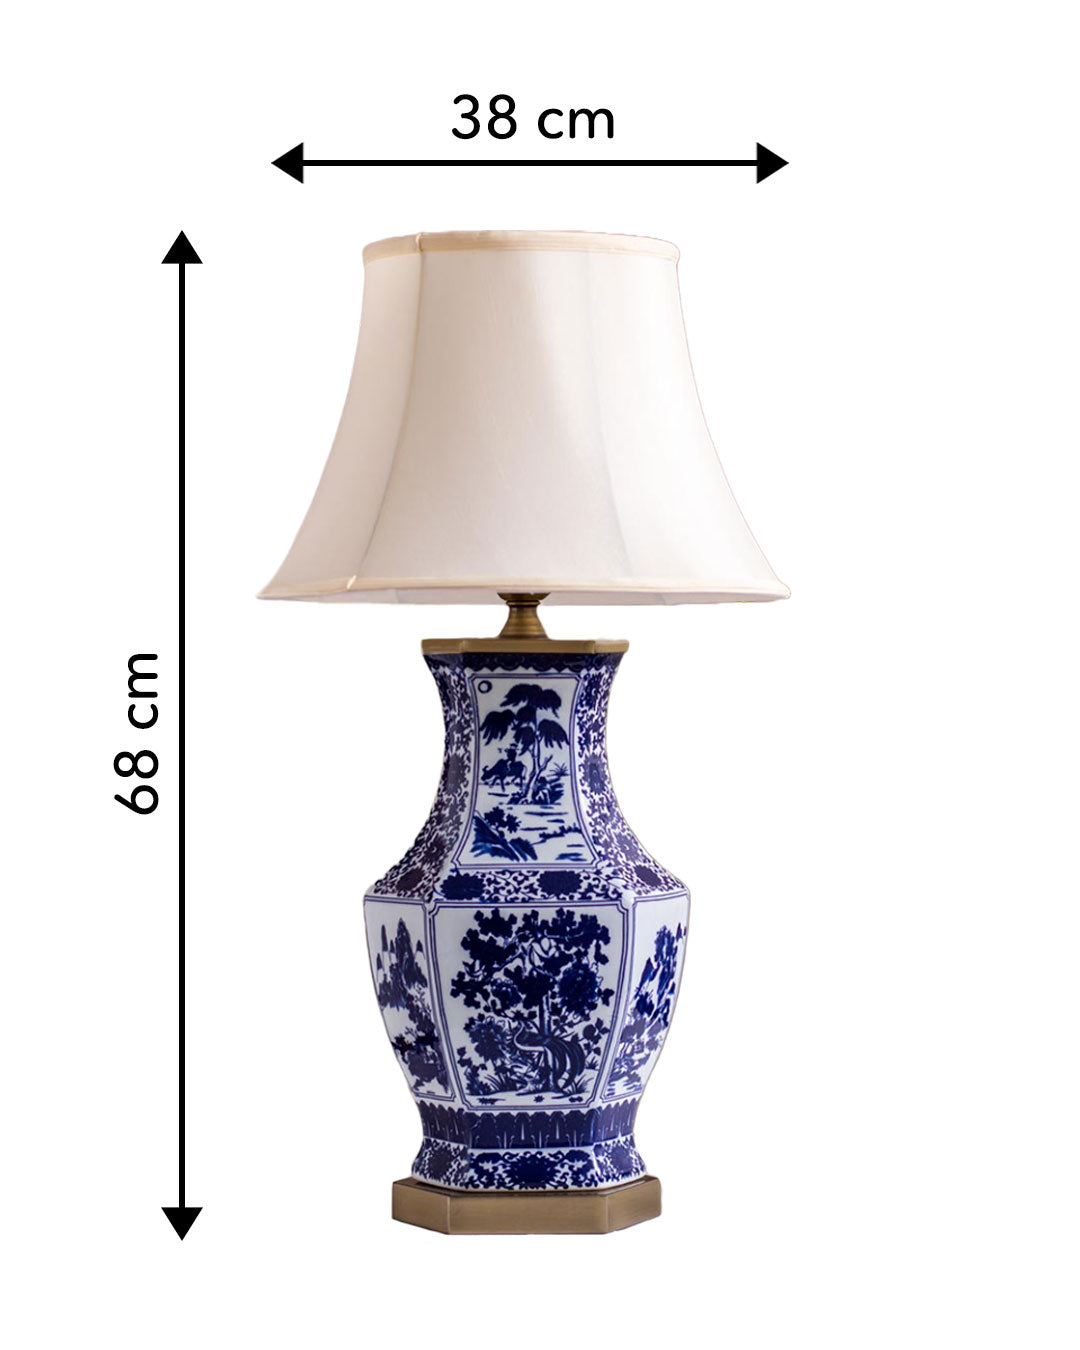 'Enlightened Shepherds' Porcelain Vase Table Lamp